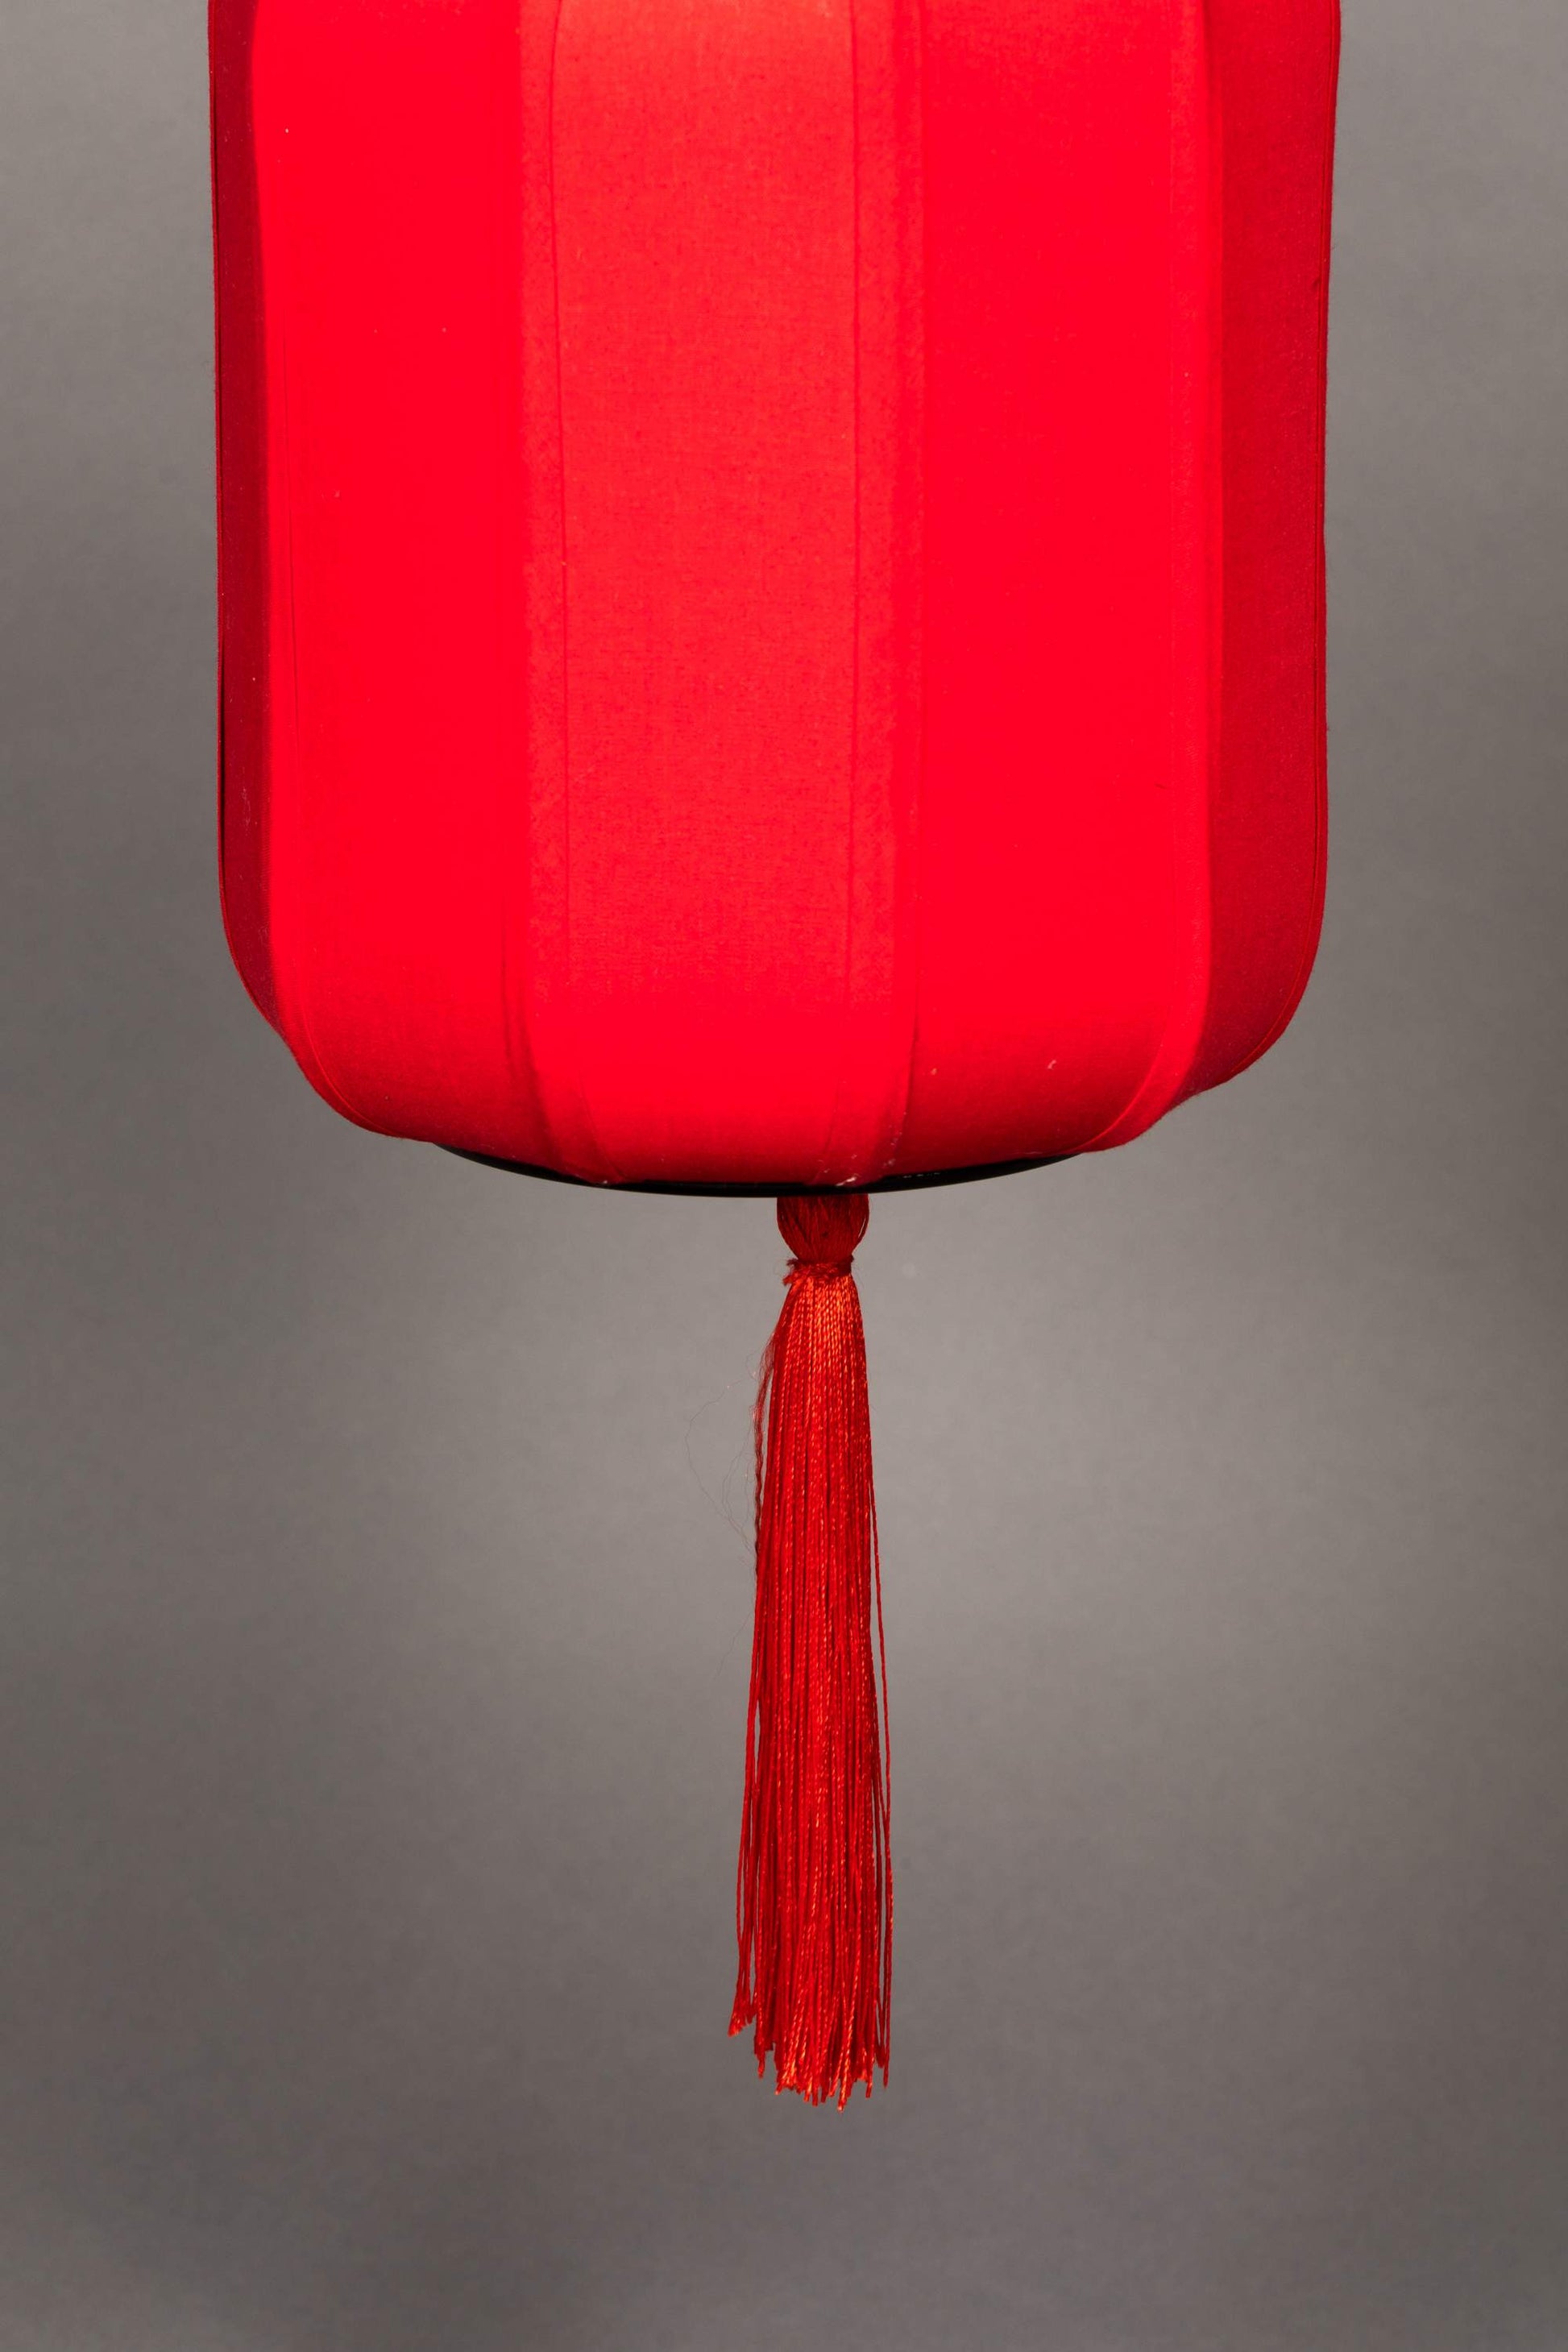 Dutchbone | TABLE LAMP SUONI RED Default Title